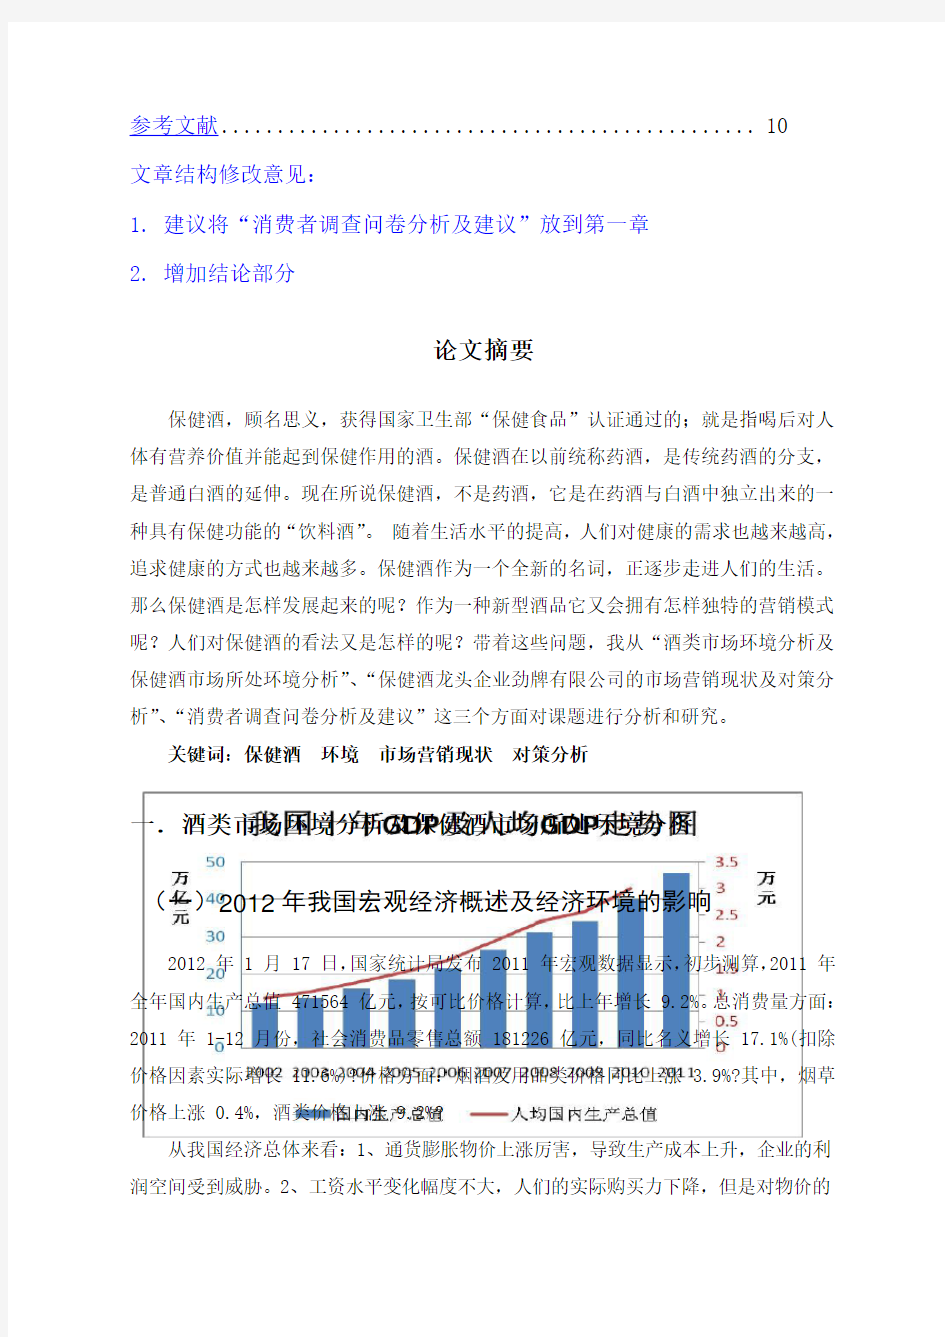 中国保健酒的市场营销现状及对策分析 以劲酒公司为例